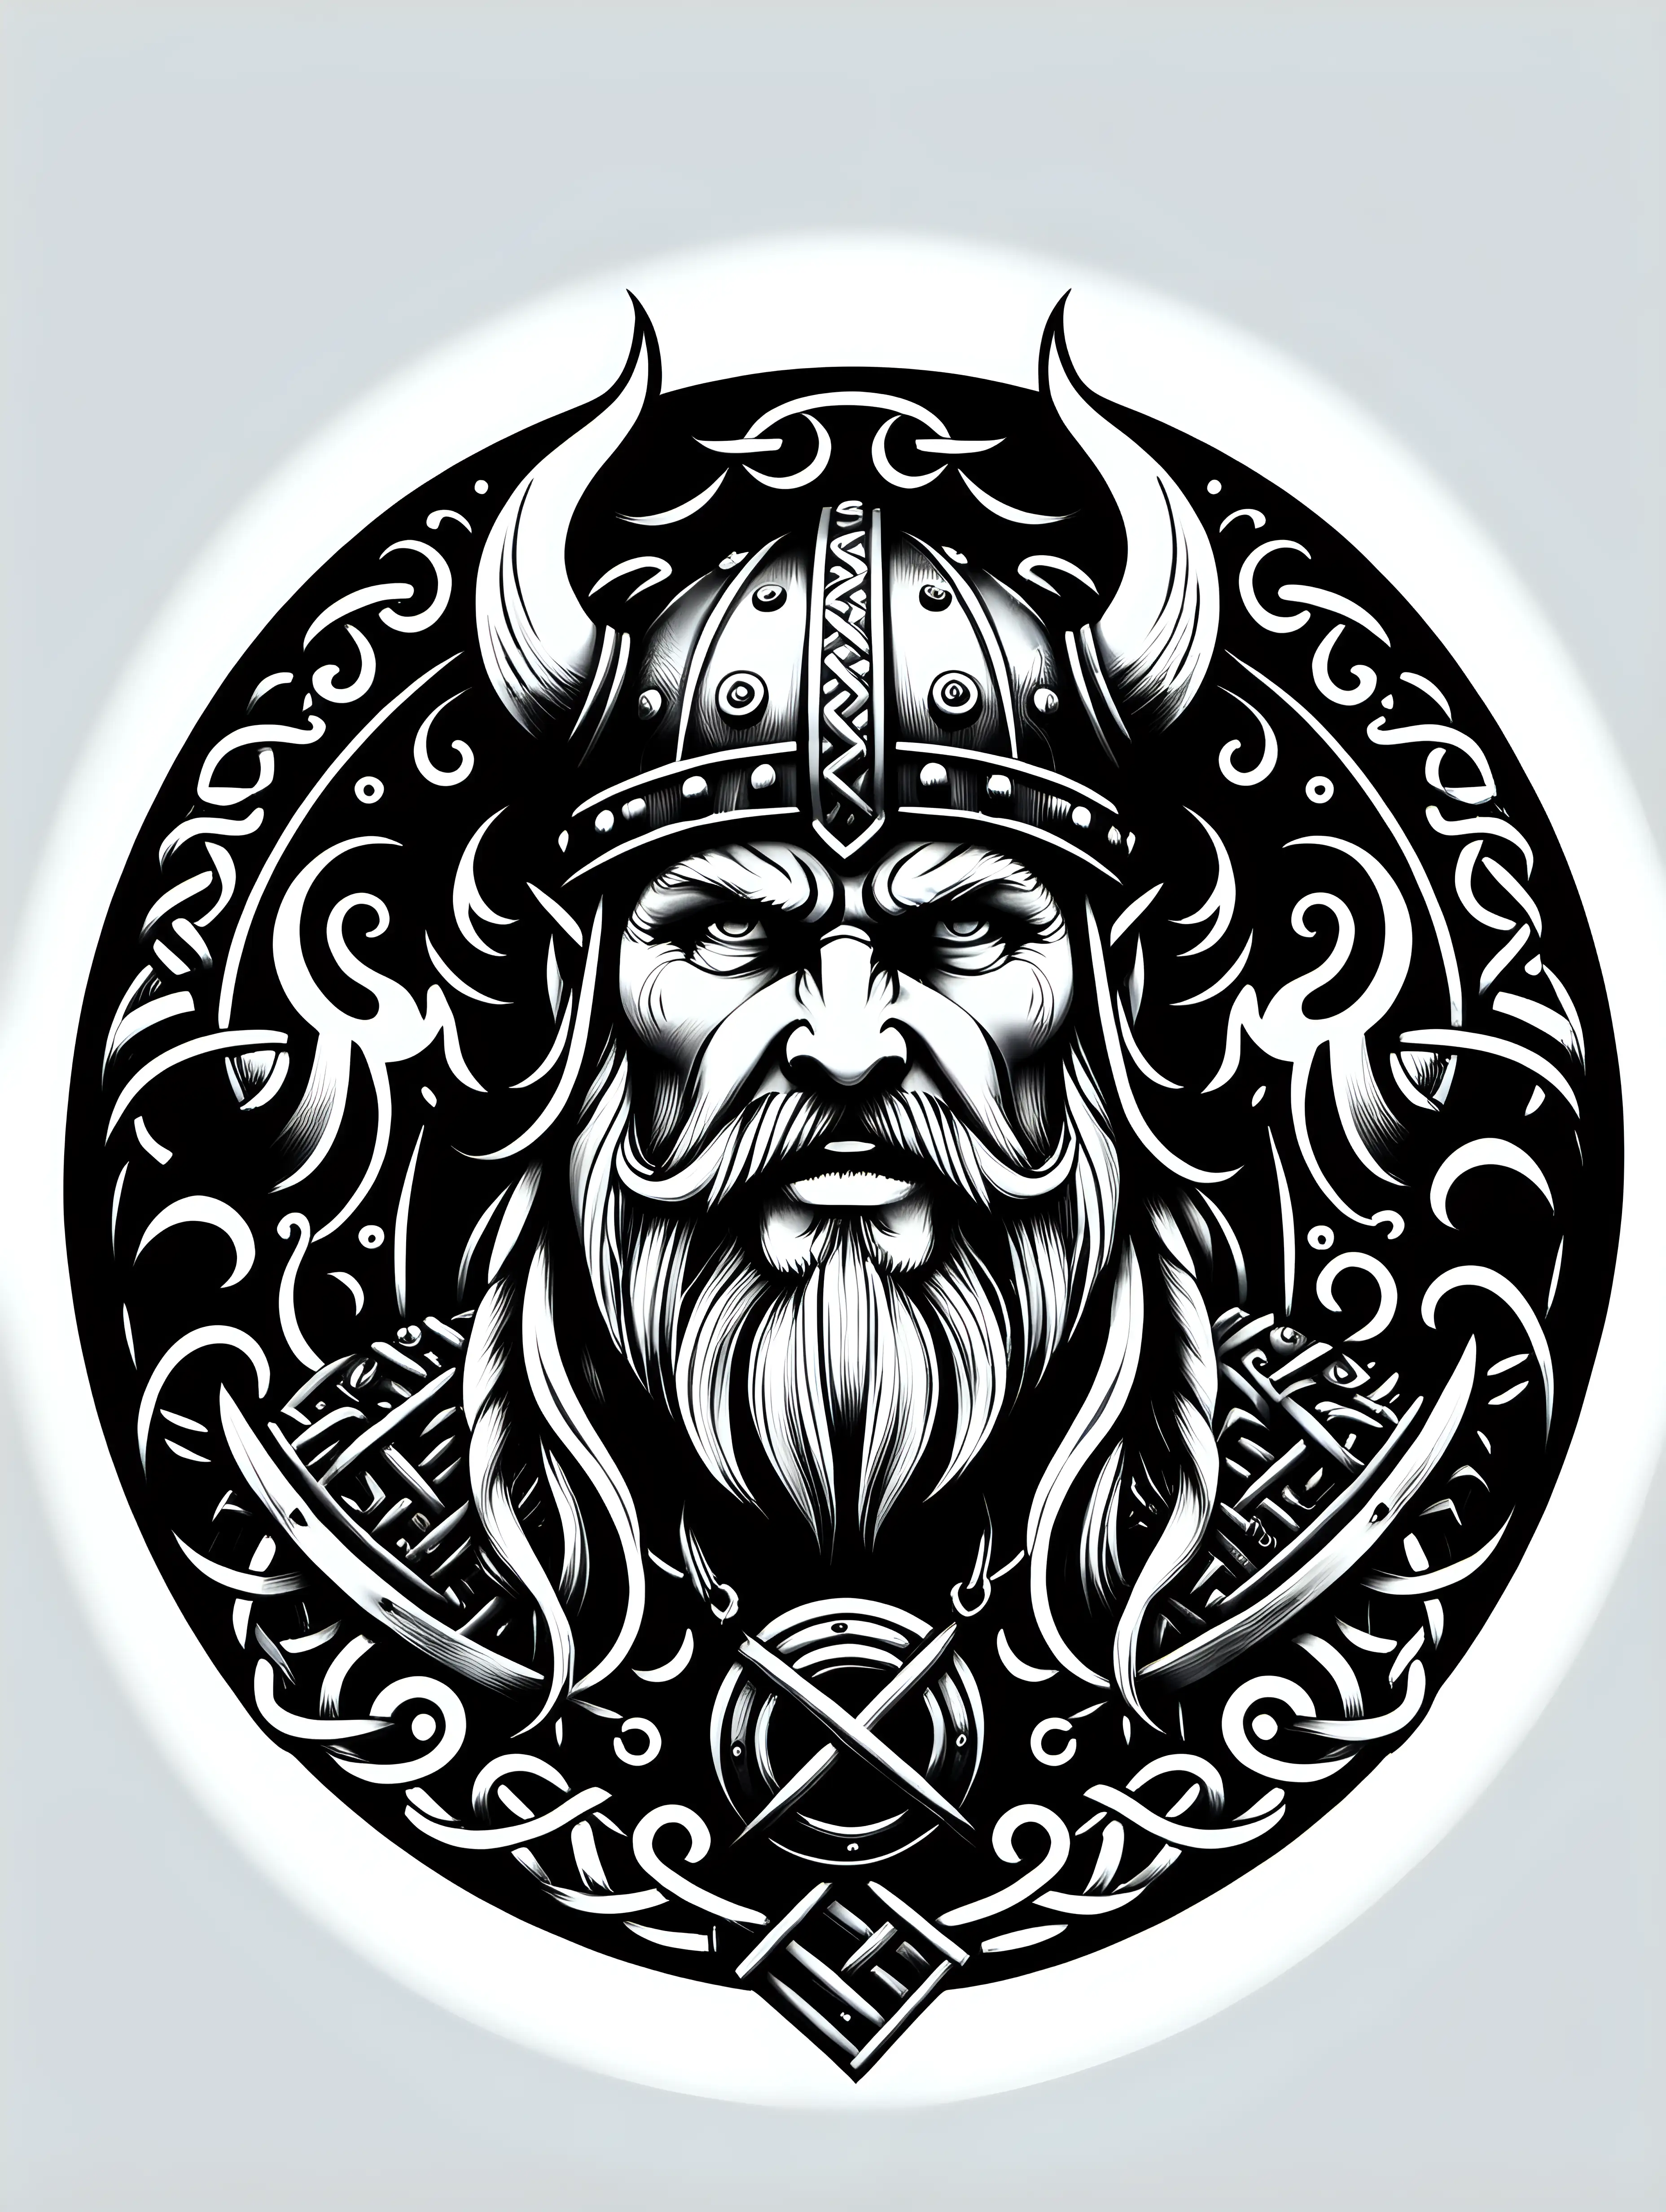 Viking Rune TShirt Design in Classic Black and White